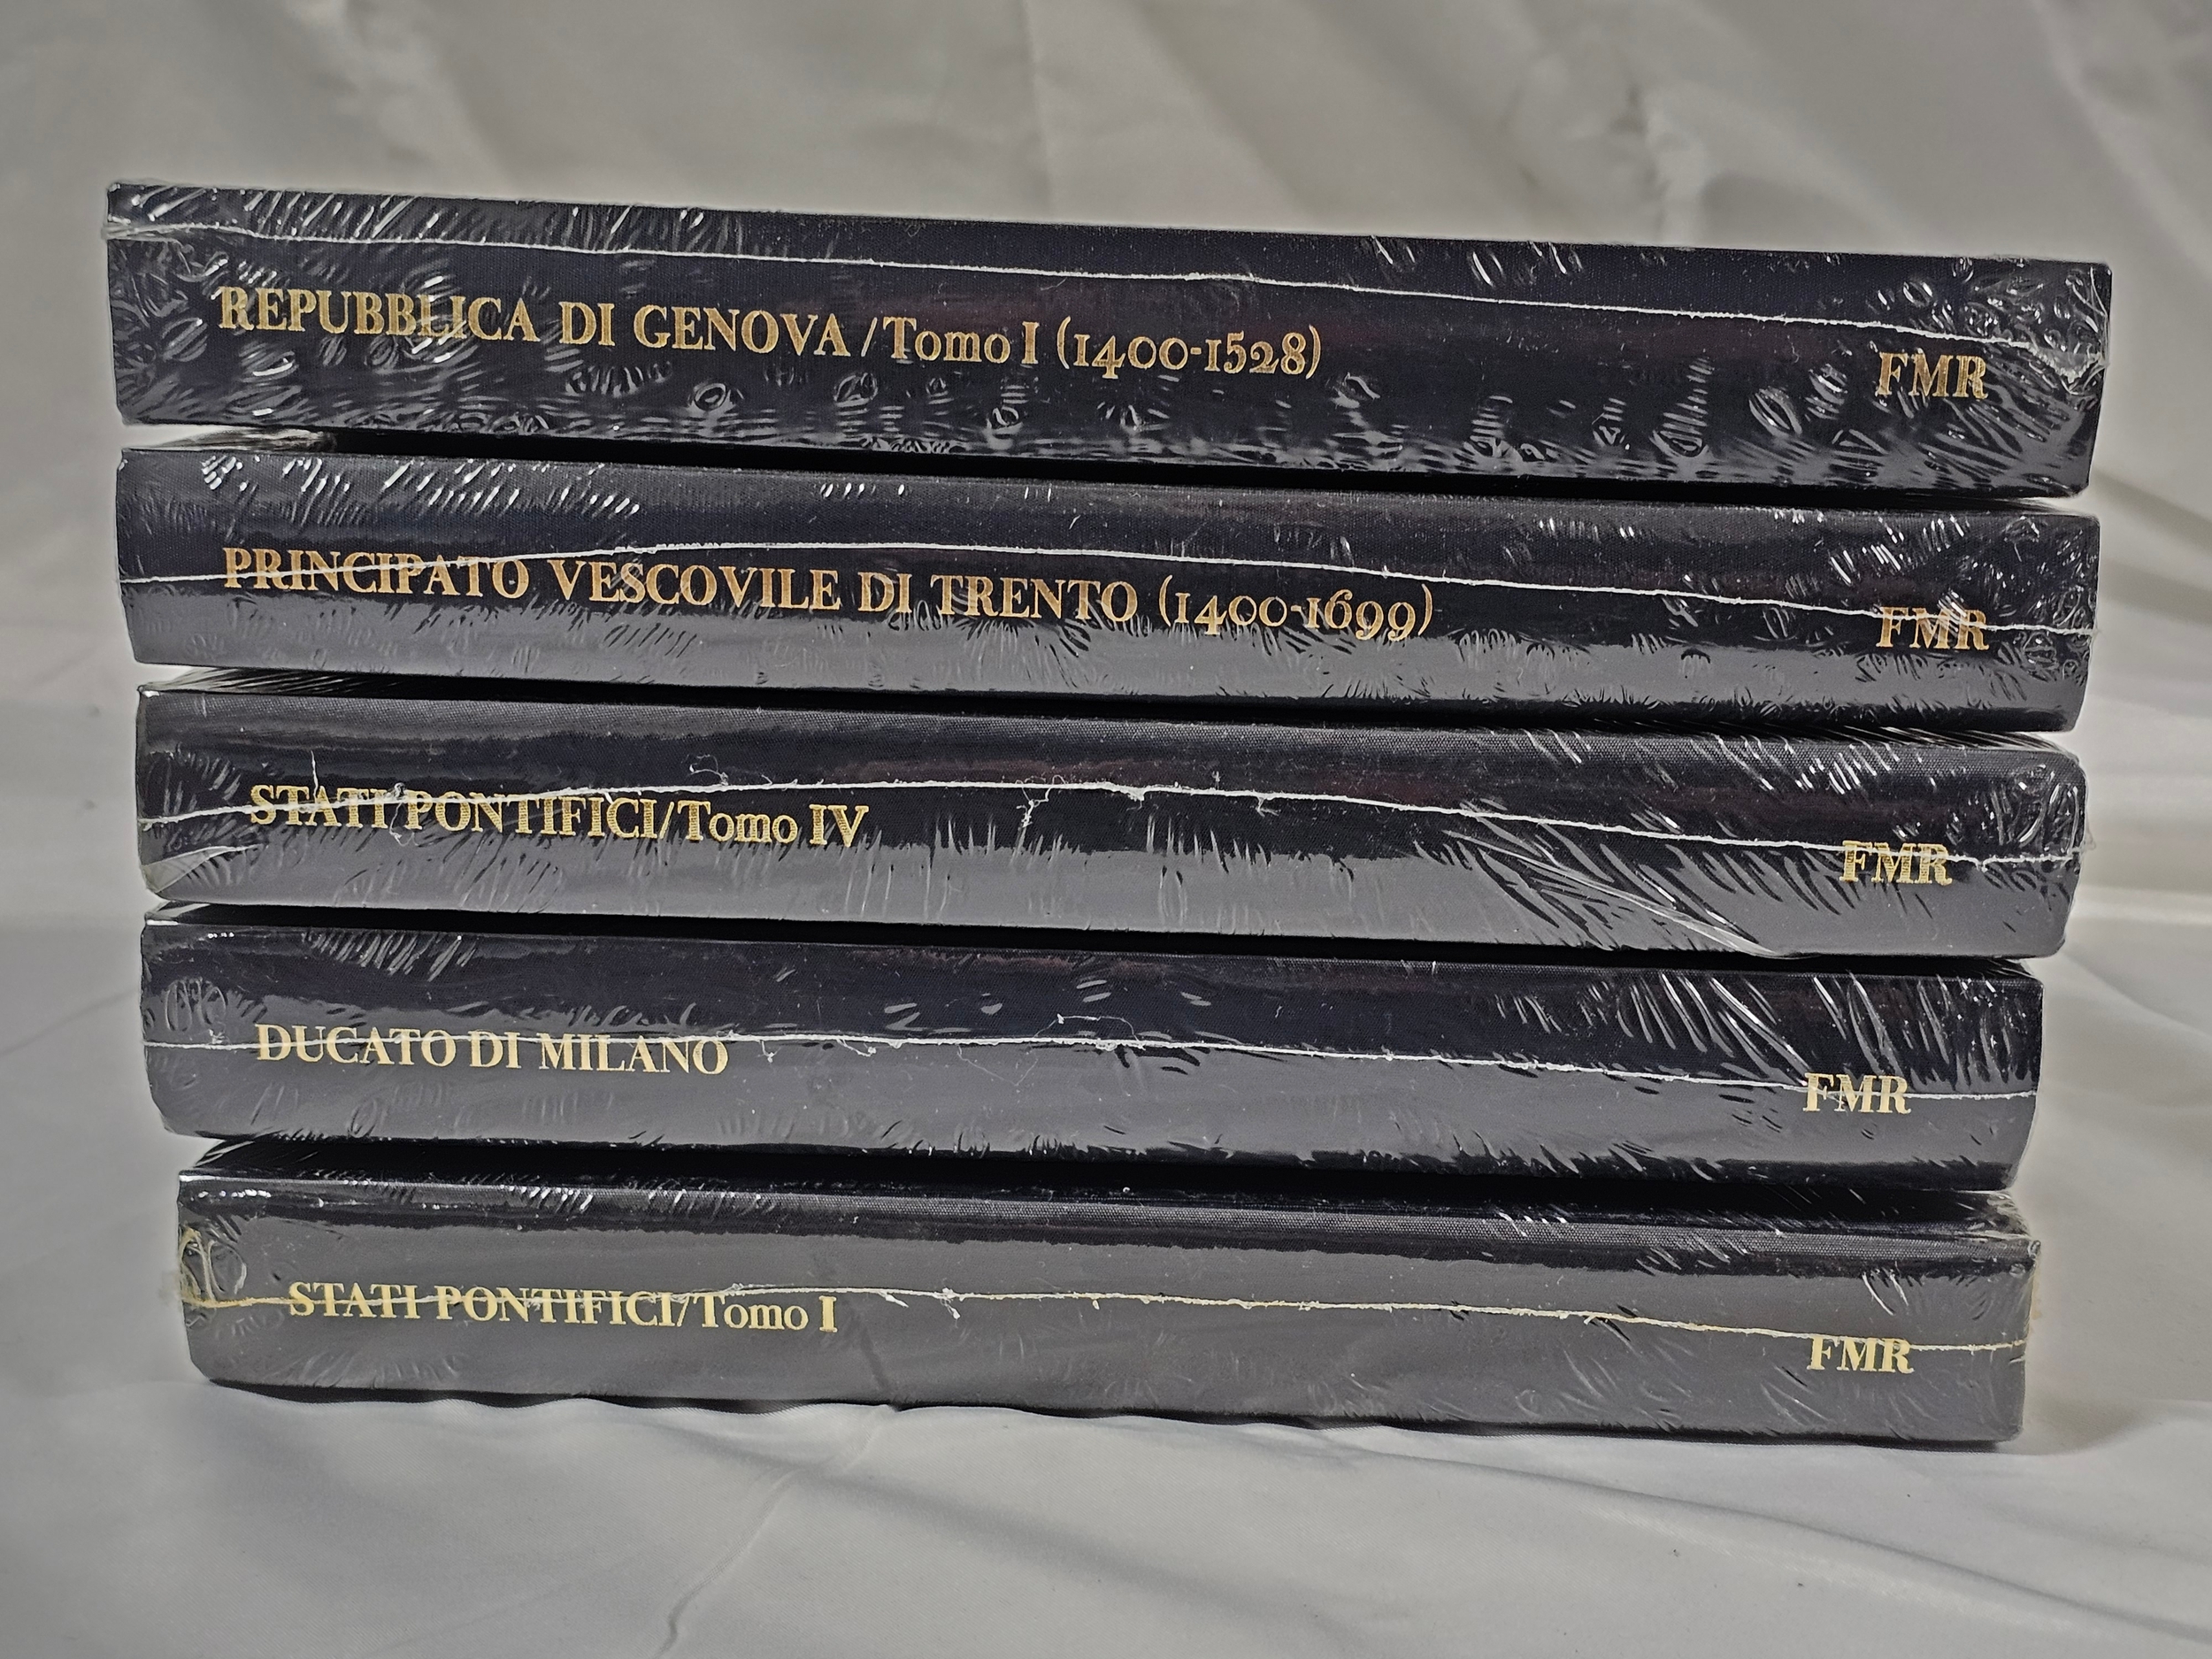 Franco Maria Ricci. A collection of sealed books. Including Signorie e Principati and Ducato Milano.